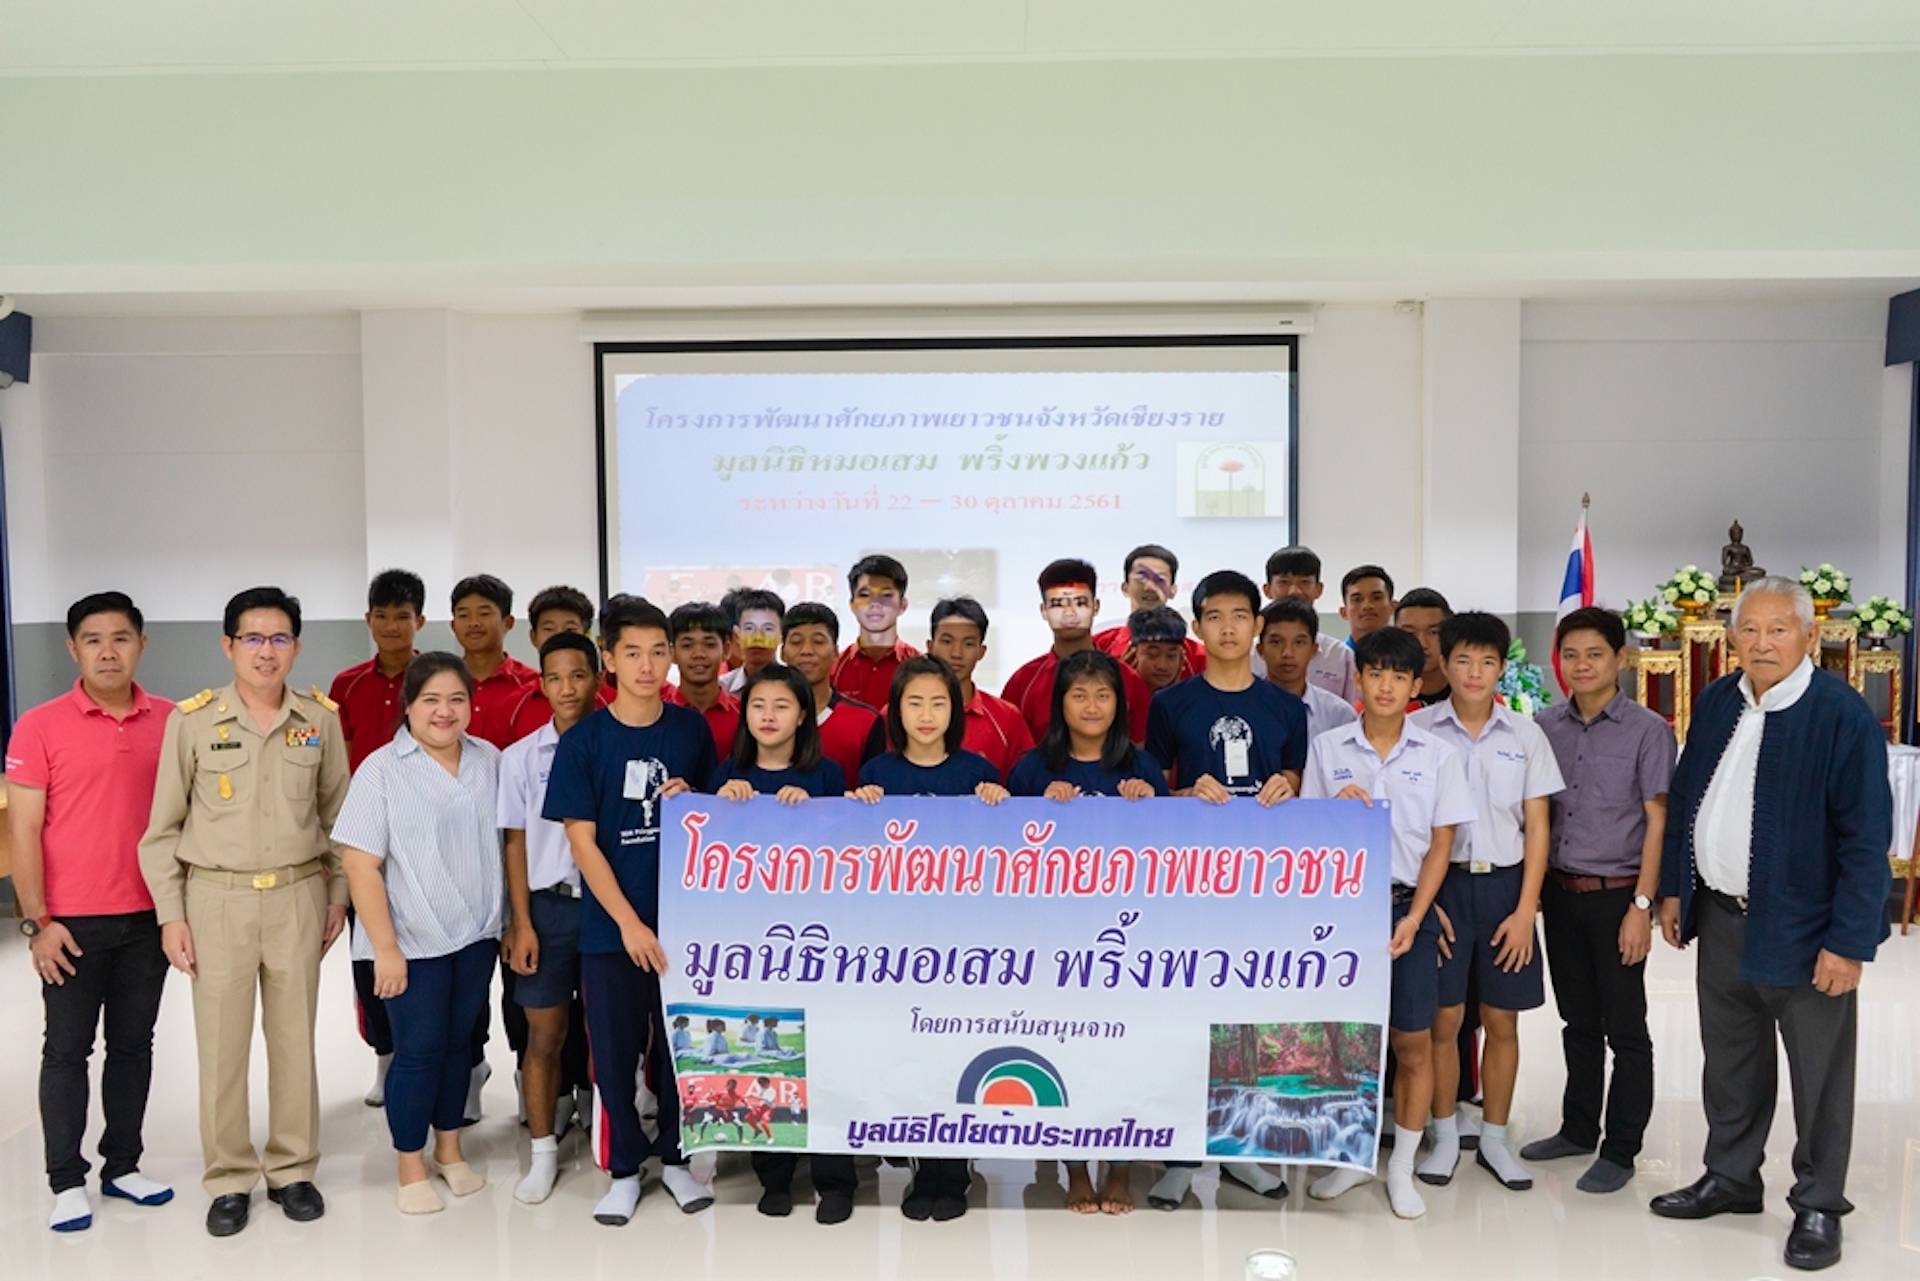 มูลนิธิโตโยต้า ร่วมกับมูลนิธิหมอเสม  จัดค่ายพัฒนาศักยภาพเยาวชน  ยกระดับคุณภาพชีวิตให้แก่สังคมไทย